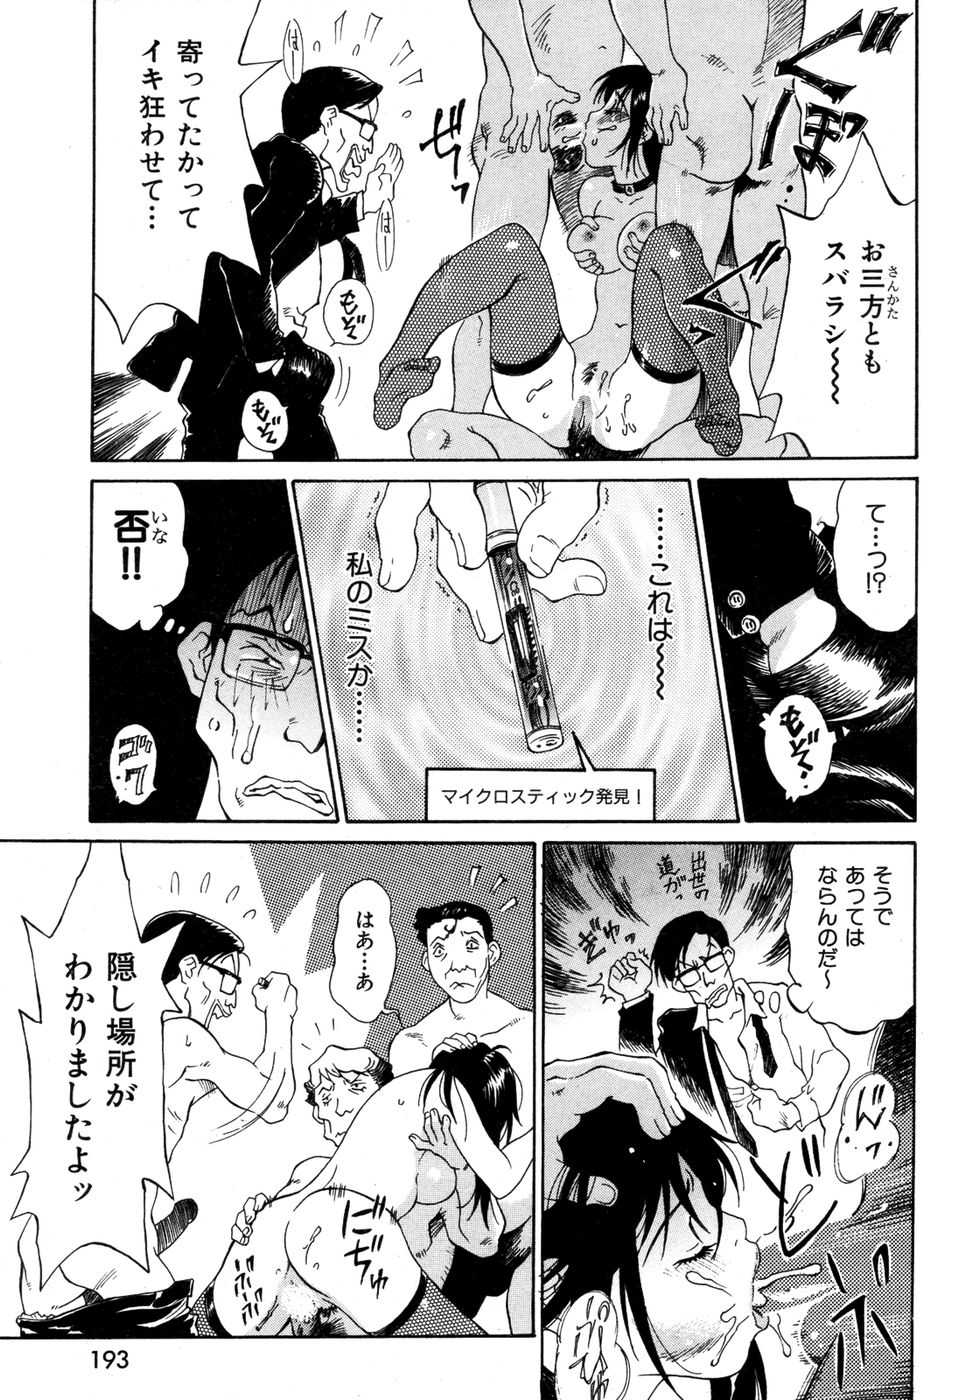 [2007.03.15]Comic Kairakuten Beast Volume 17 